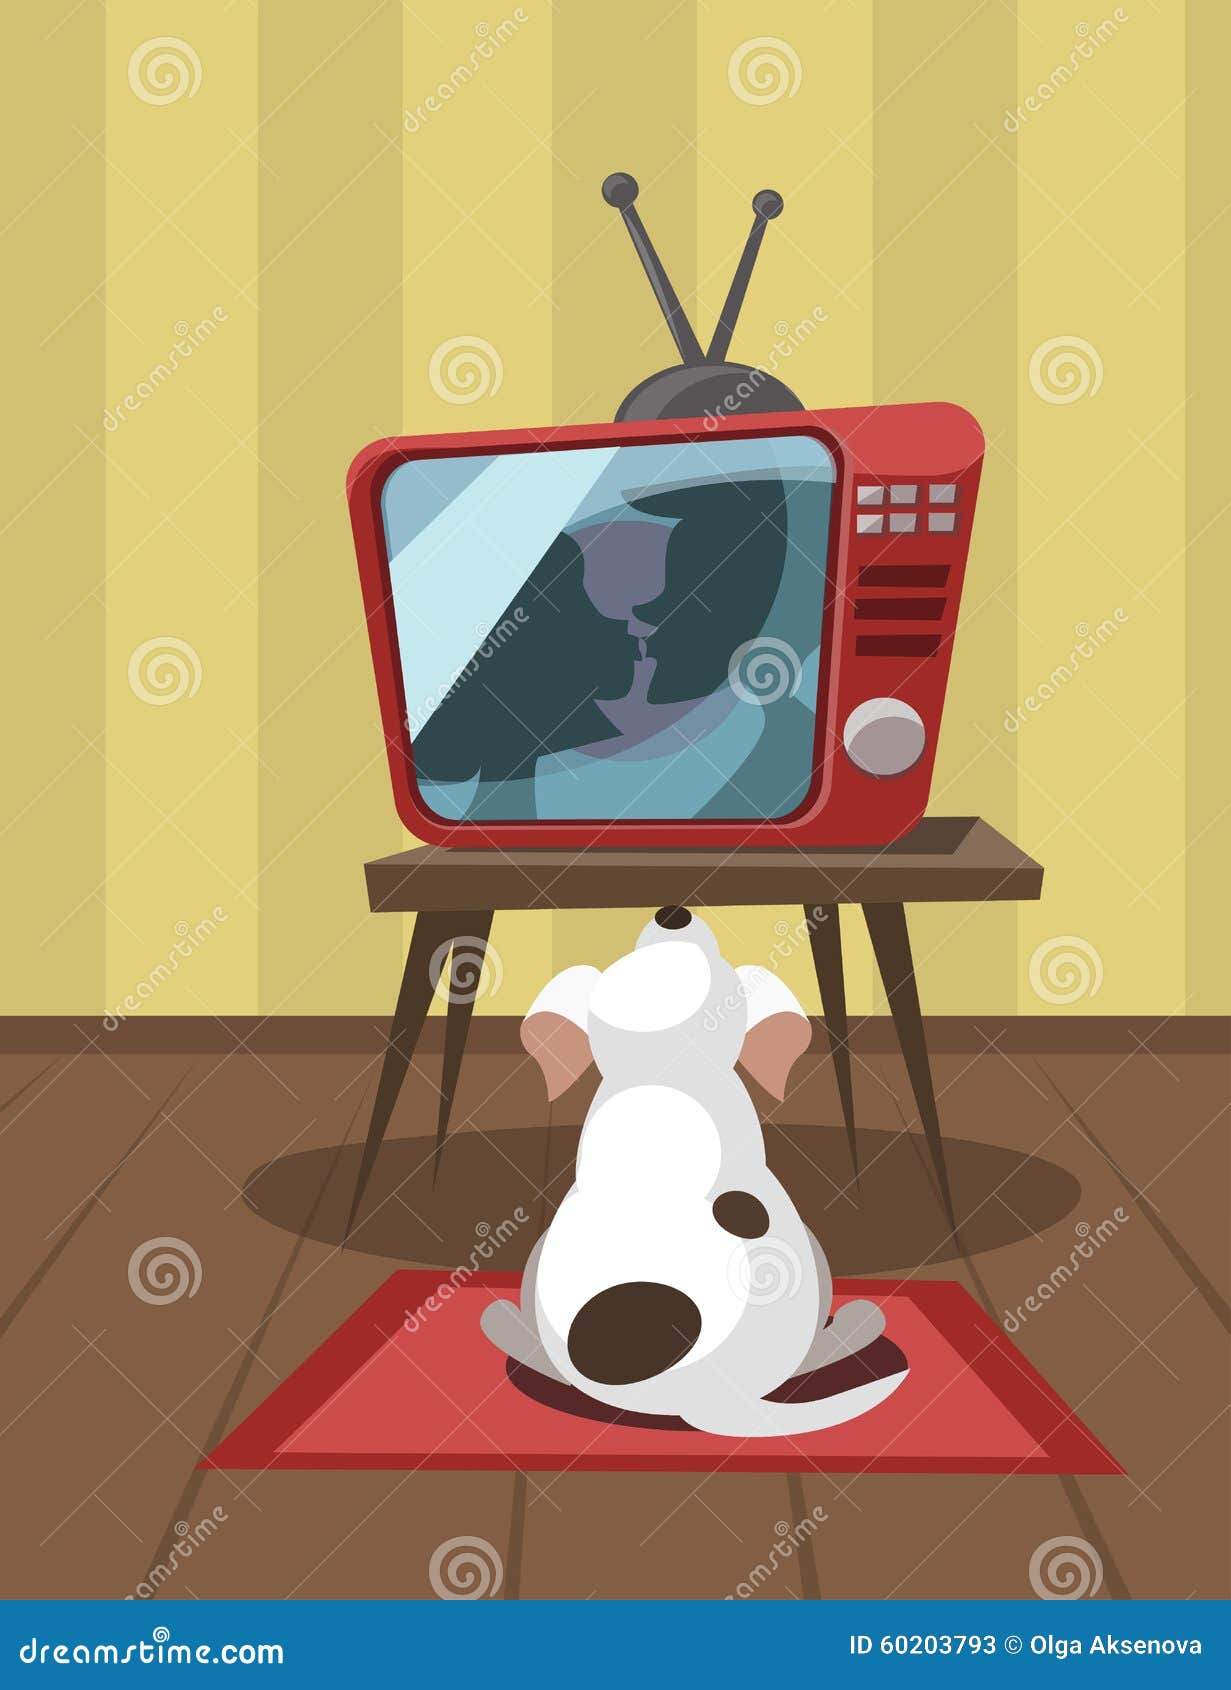 Собаки смотрят телевизор. Собака перед телевизором. Перед телевизором иллюстрация. Собака смотрит телевизор. Мультяшный телевизор в комнате.